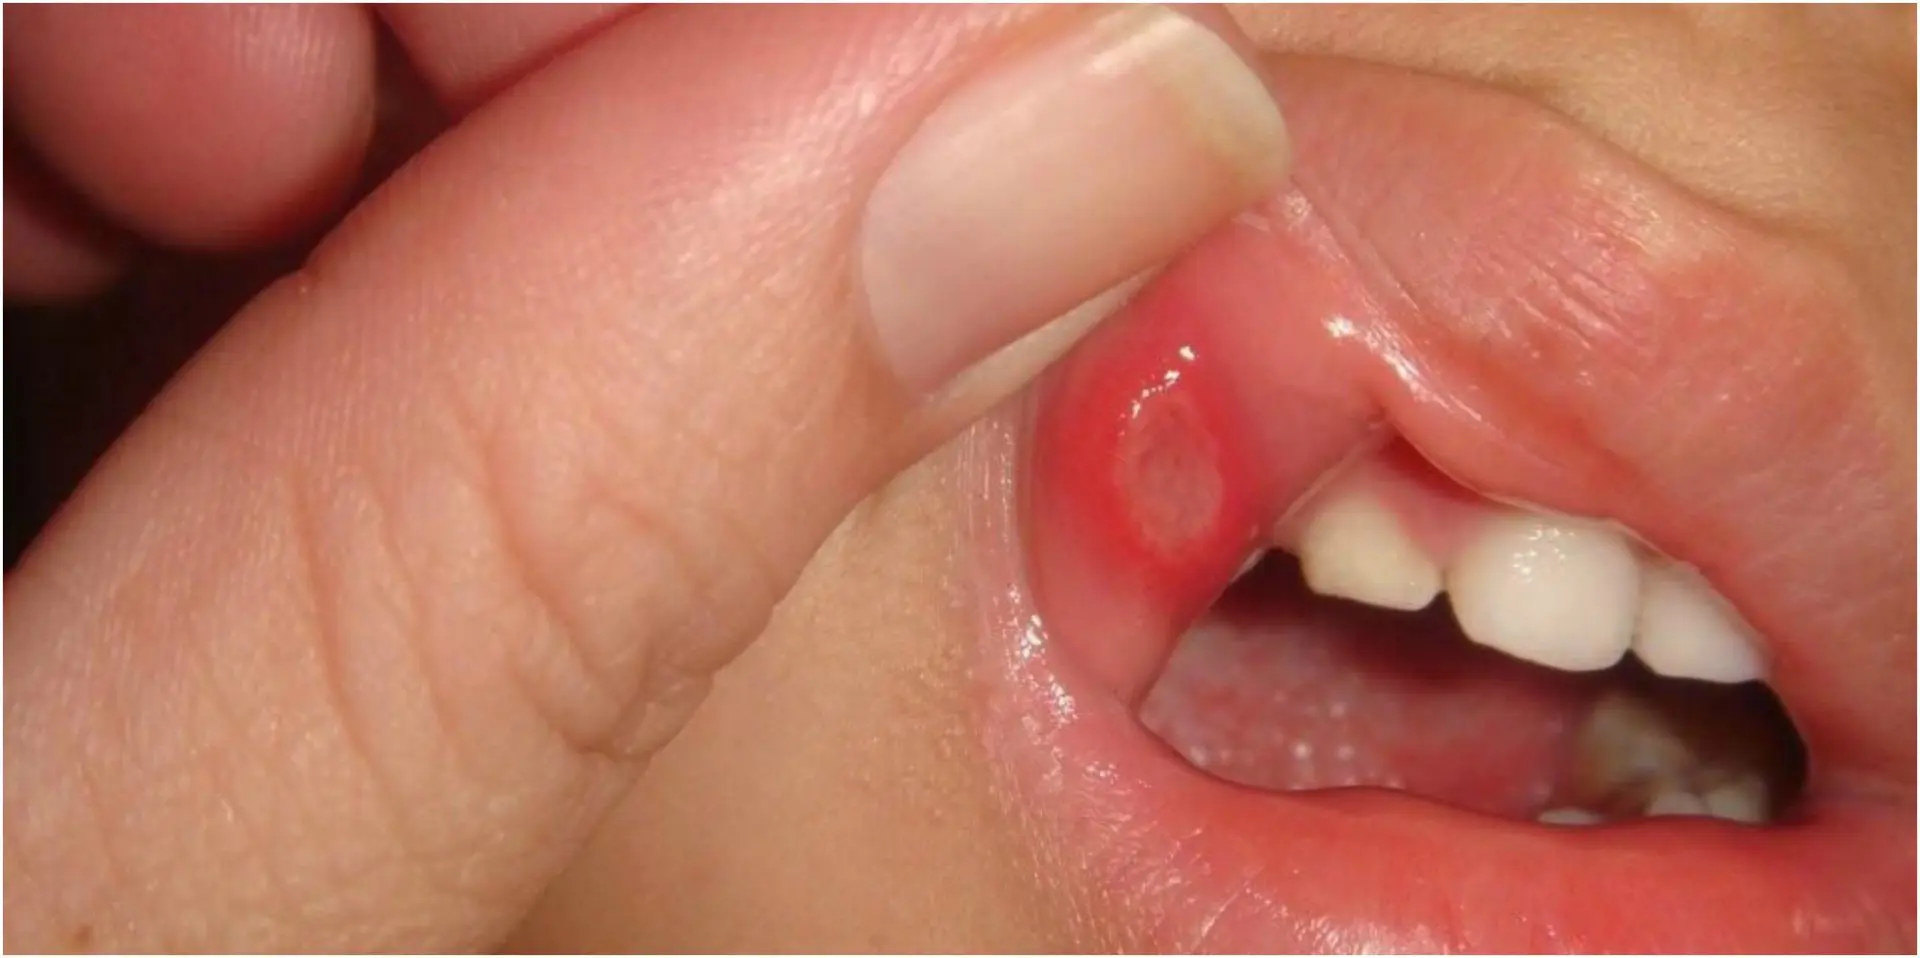 كيف تعالجين الفطريات المزعجة في فم طفلك؟